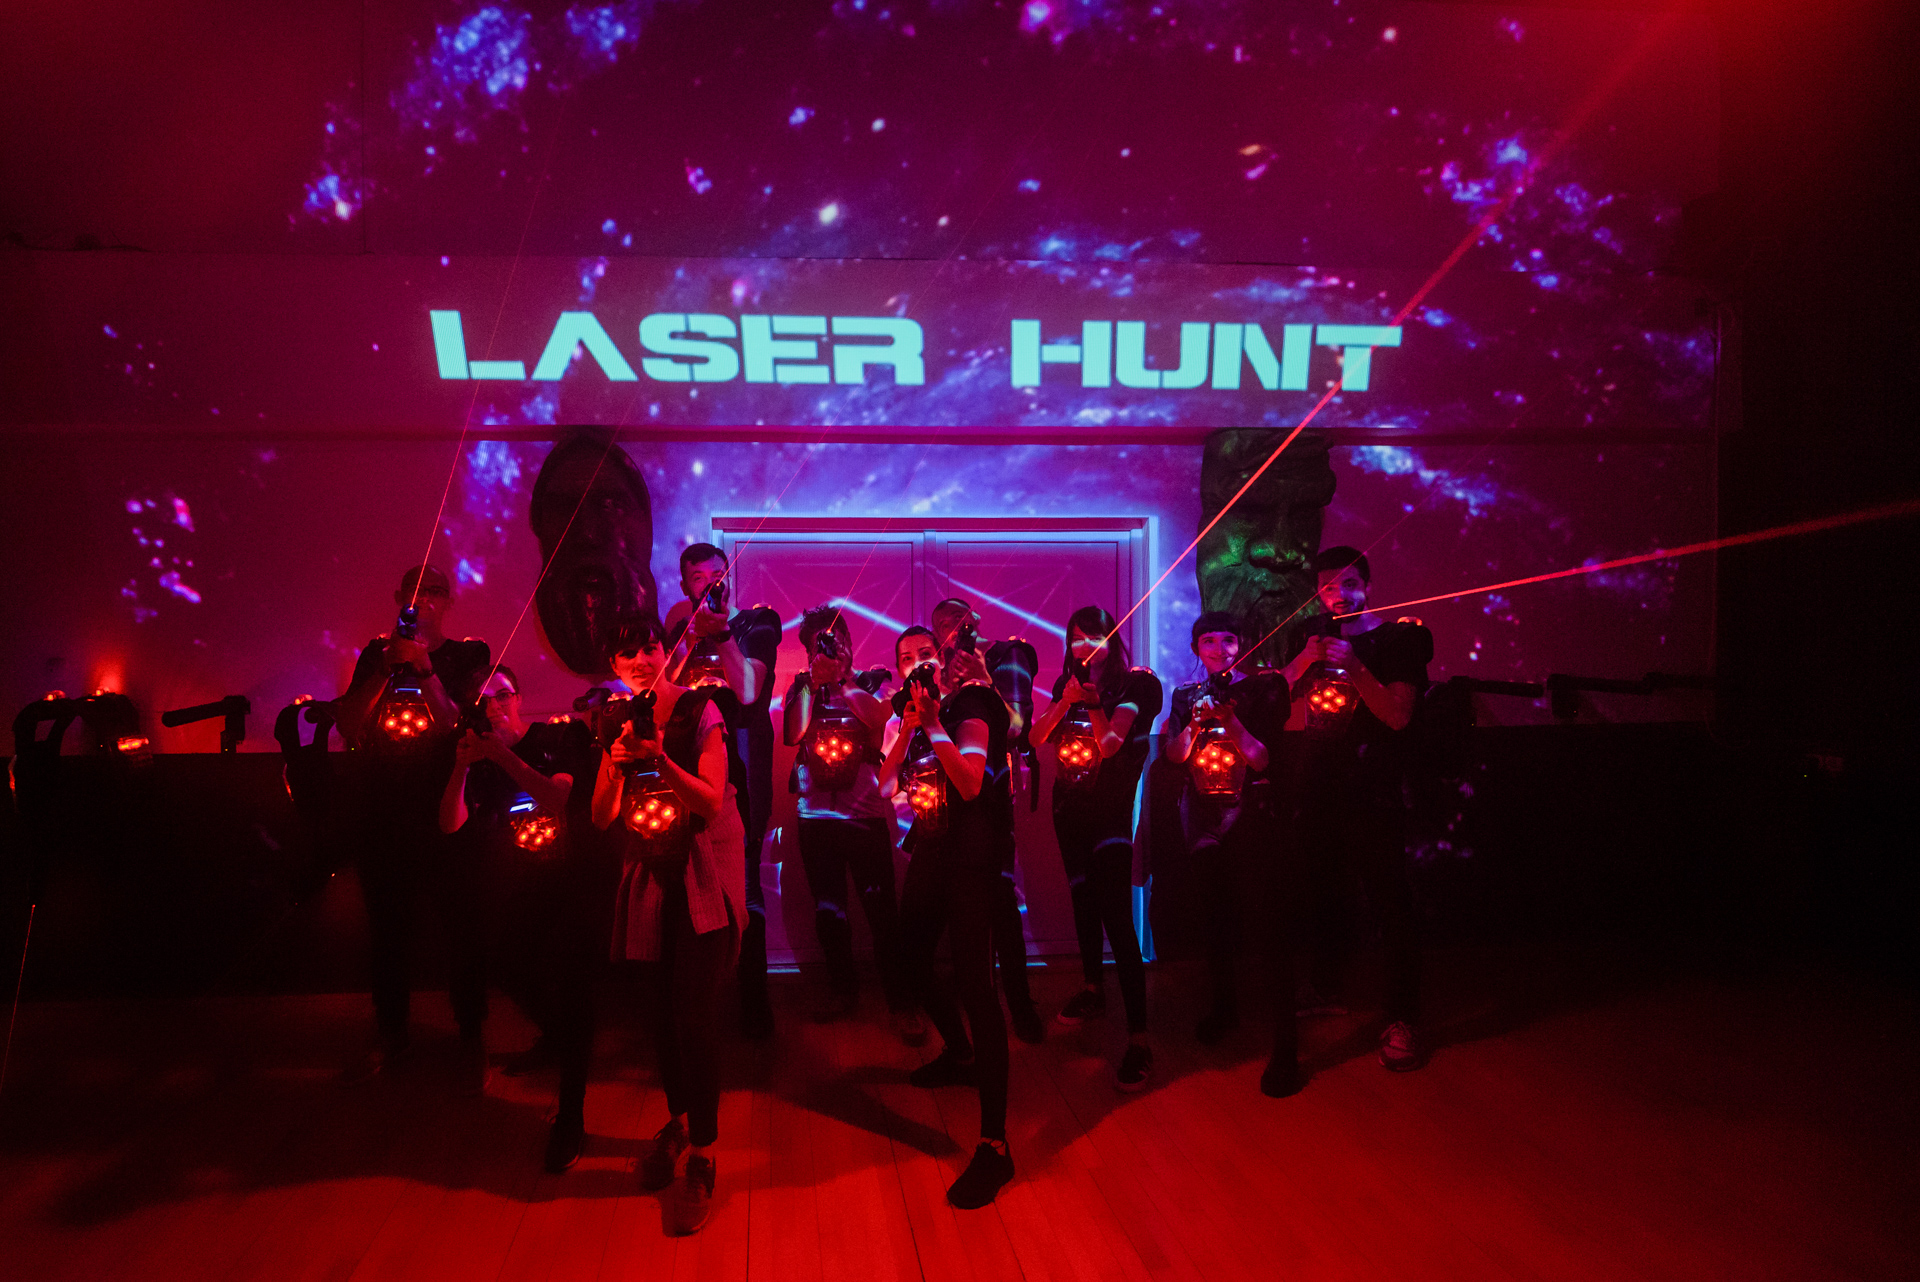 Am fost la Laser Hunt si am testat noile jocuri